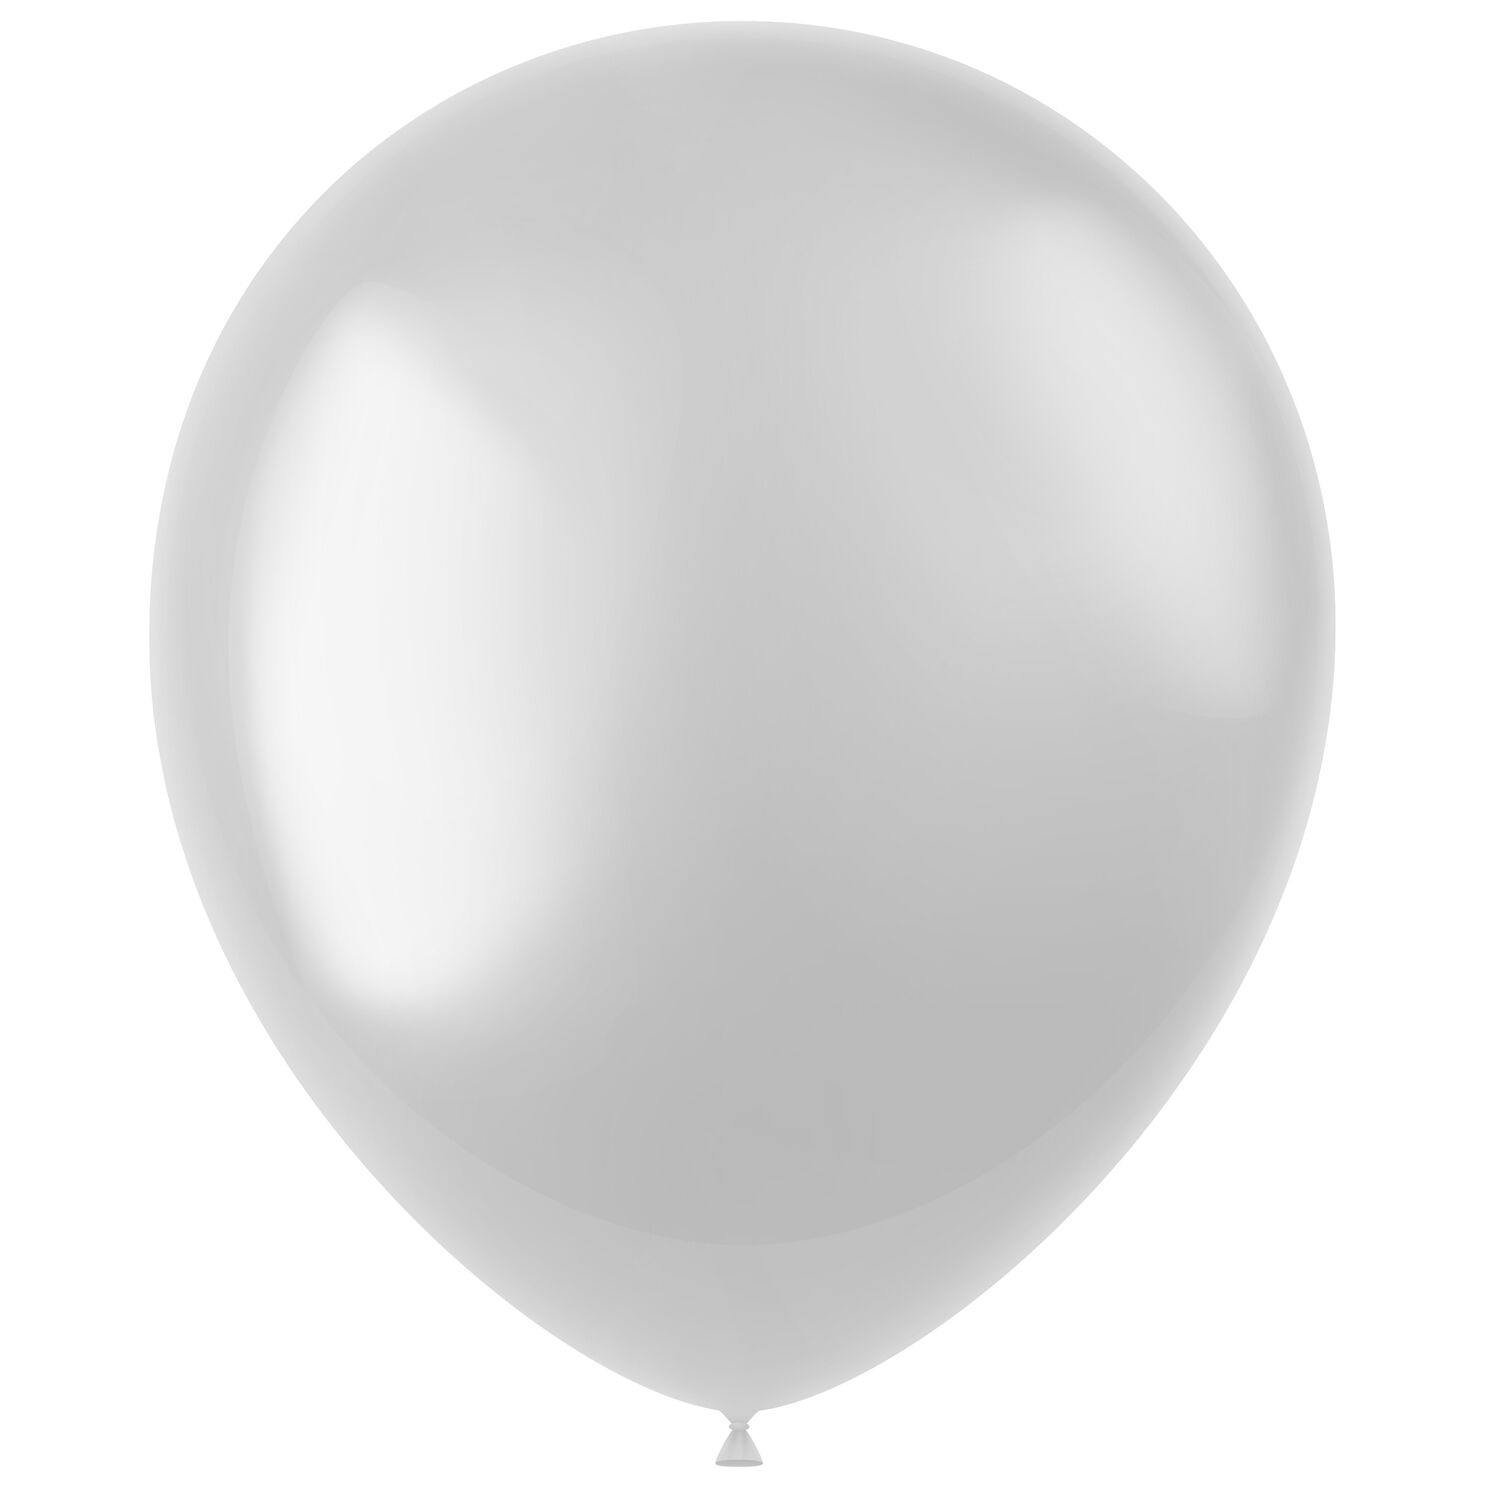 NEU Latex-Luftballons glänzend, 33cm, weiß, 100 Stück, Metallic-Ballons